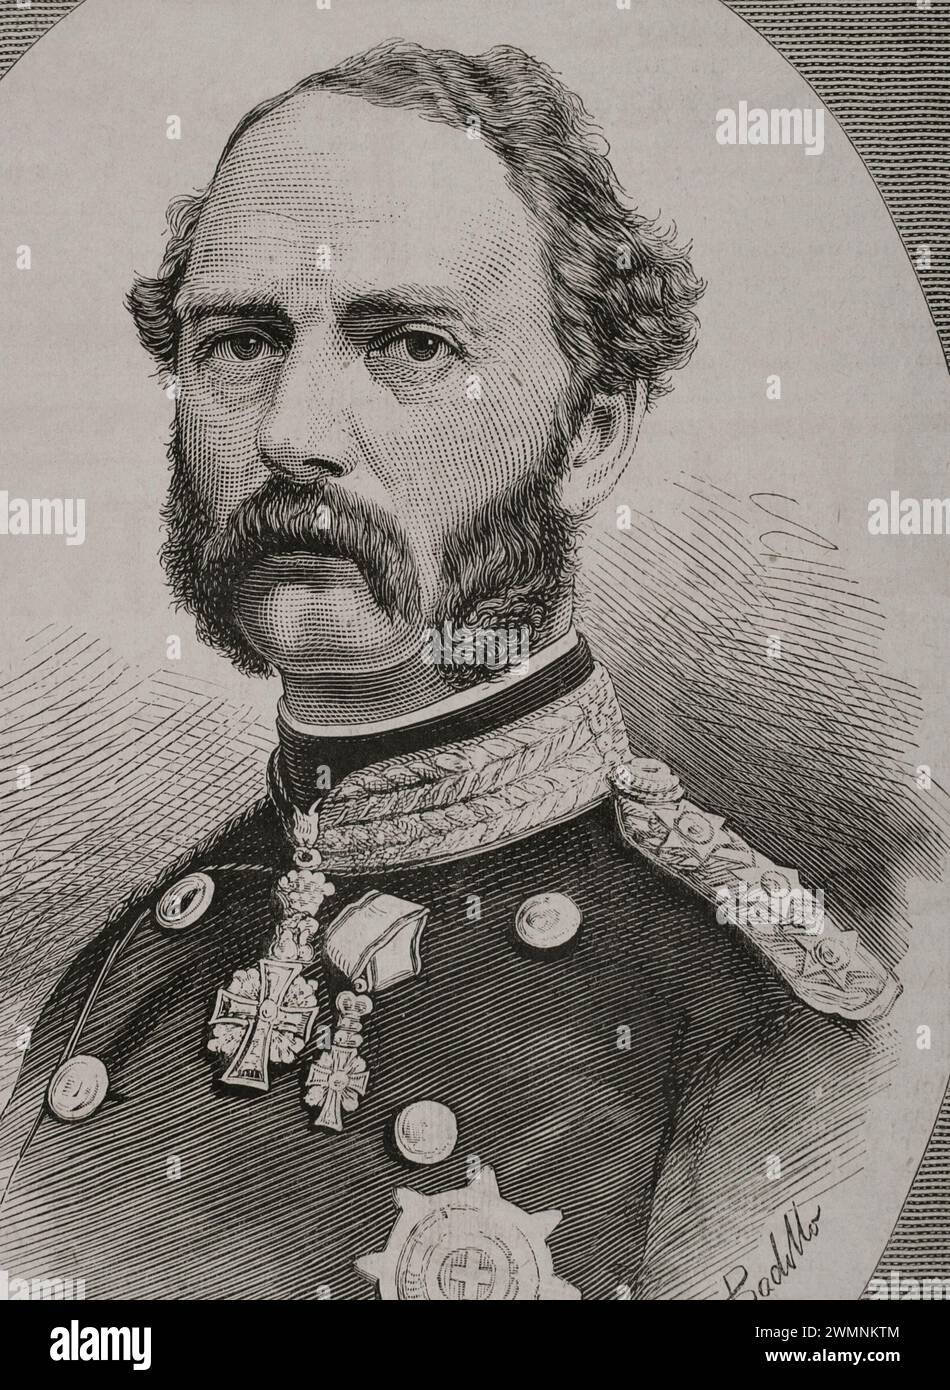 Cristiano IX (1818-1906). Rey de Dinamarca (1863-1906). Retrato. Dibujo de Badillo. Grabado. La Ilustración Española y Americana, 1878. Foto de stock